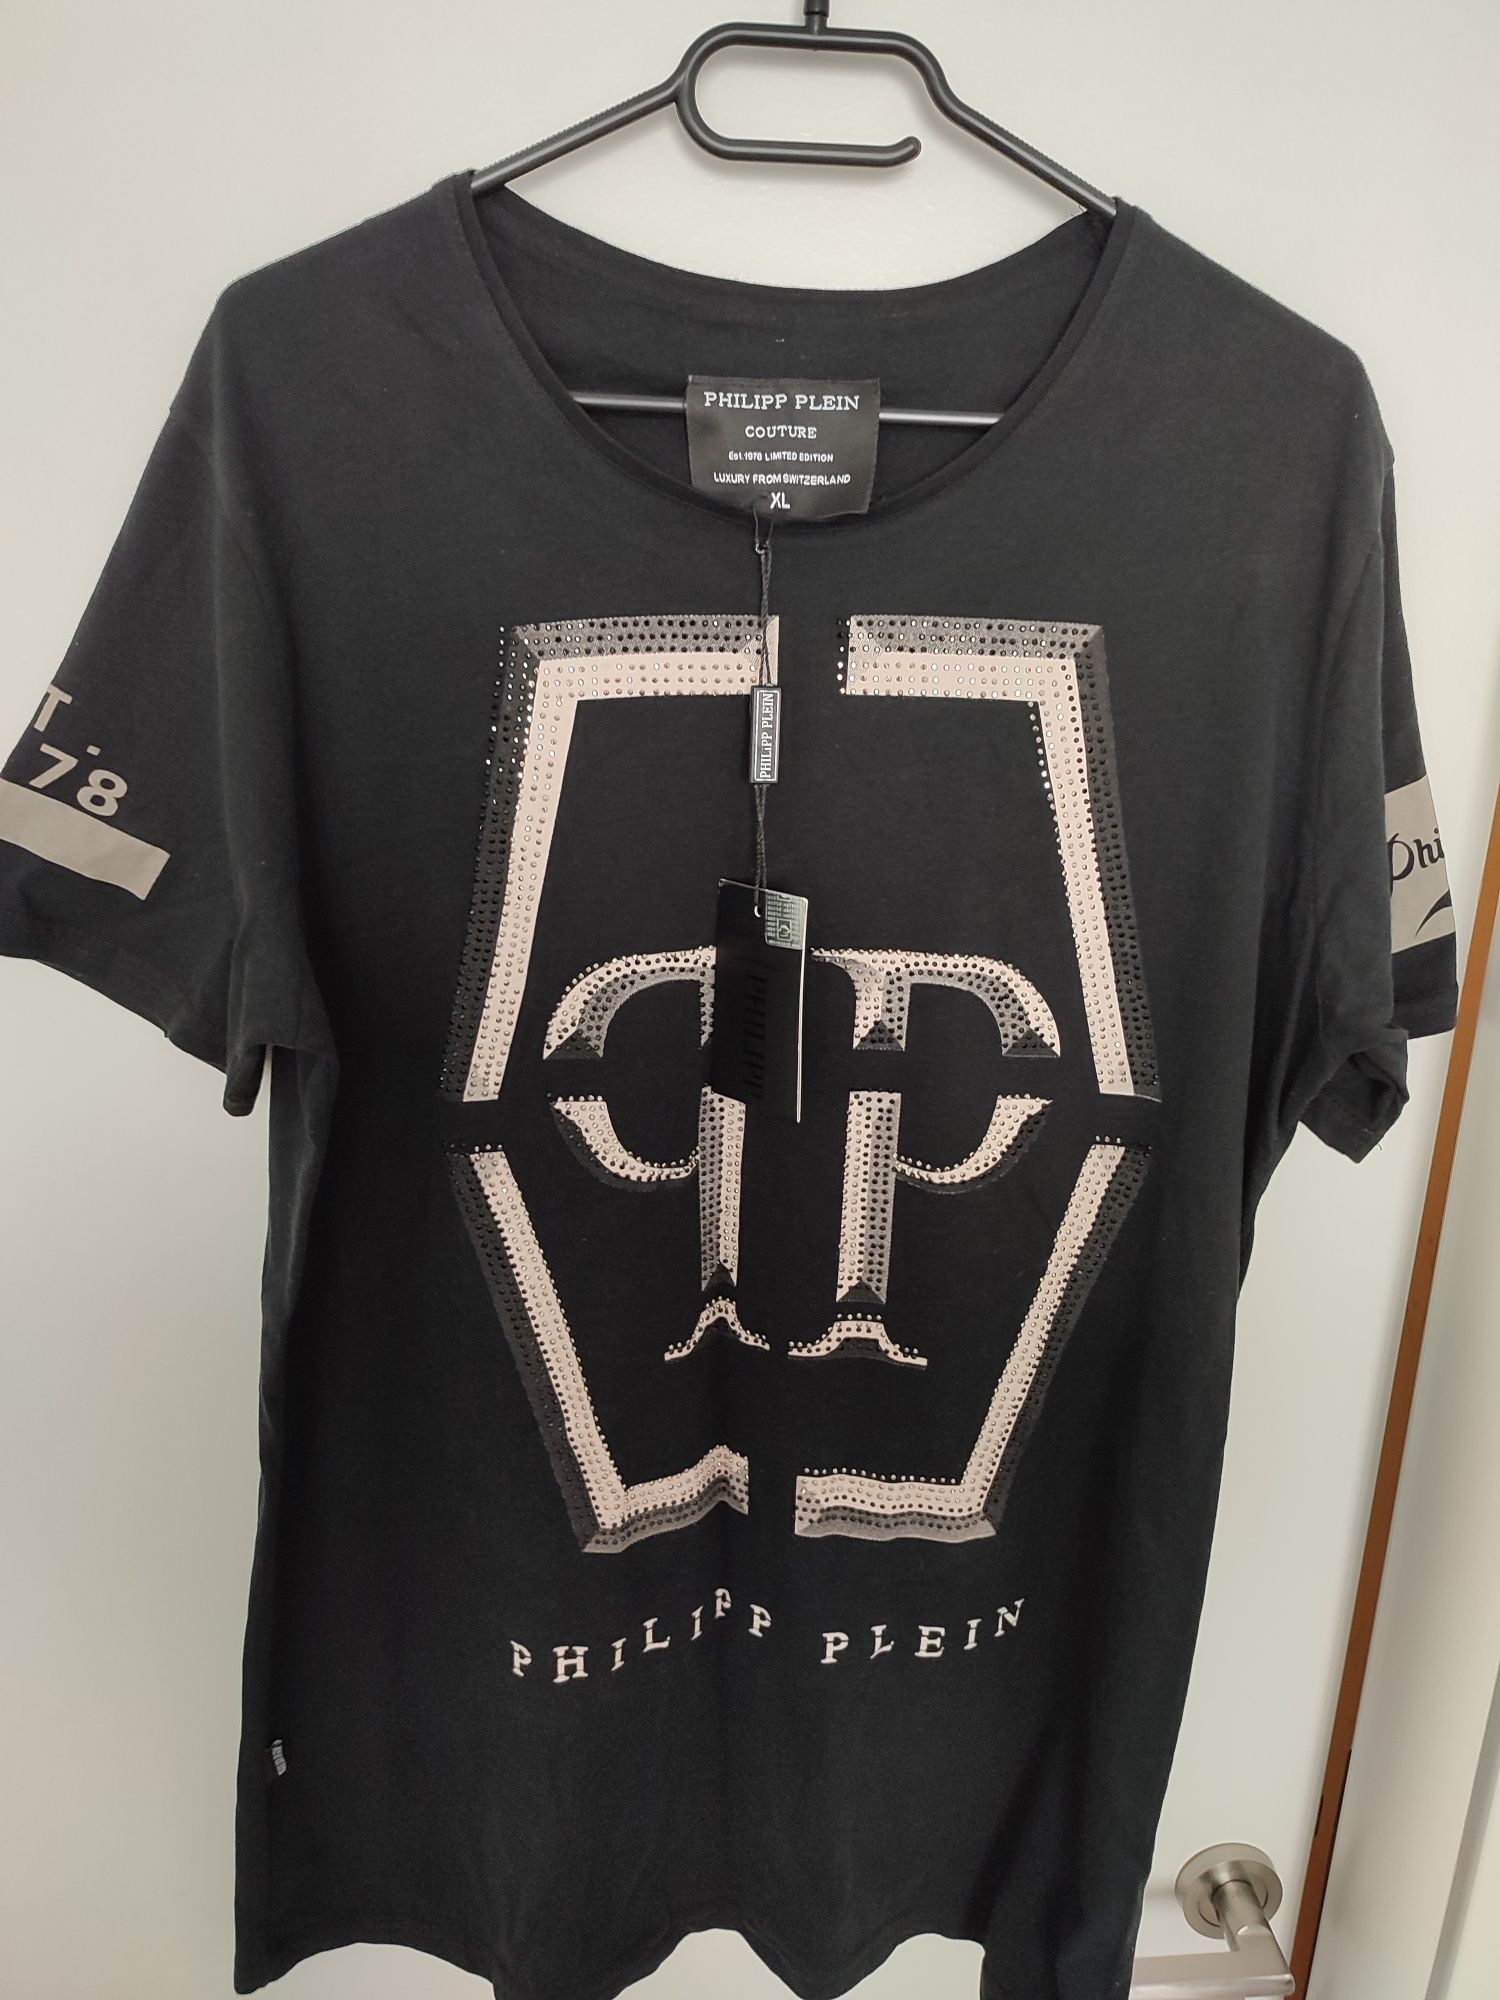 Vând tricou Philipp Plein -original cu certificat de autenticitate